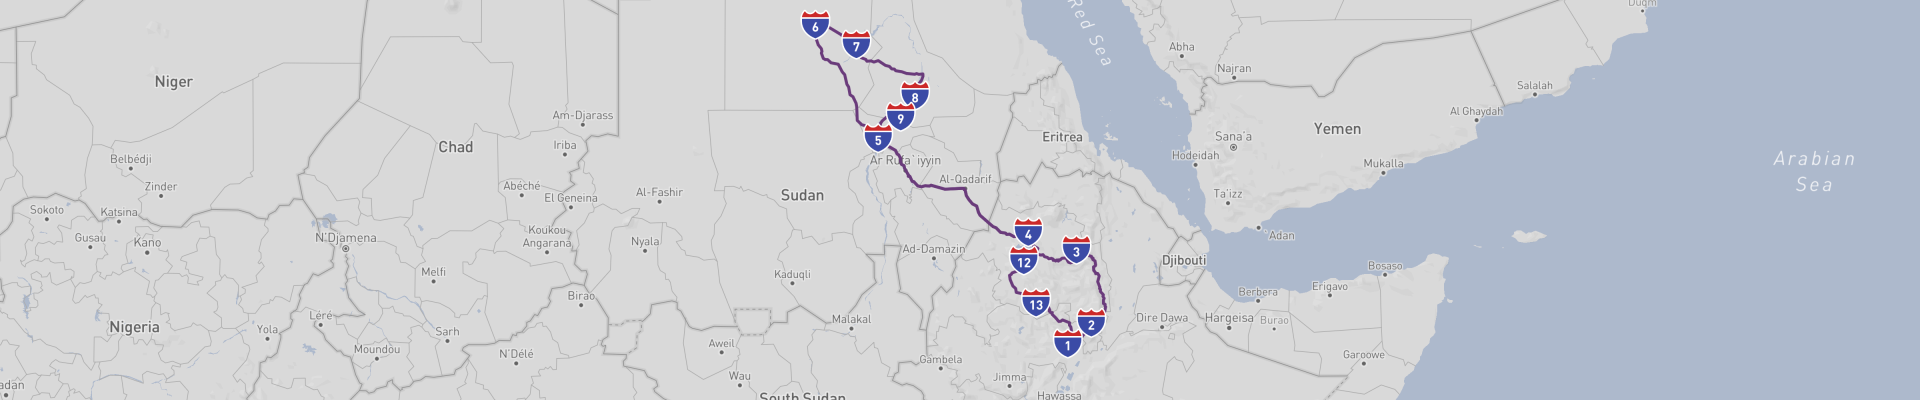 Ethiopia and Sudan Road Trip